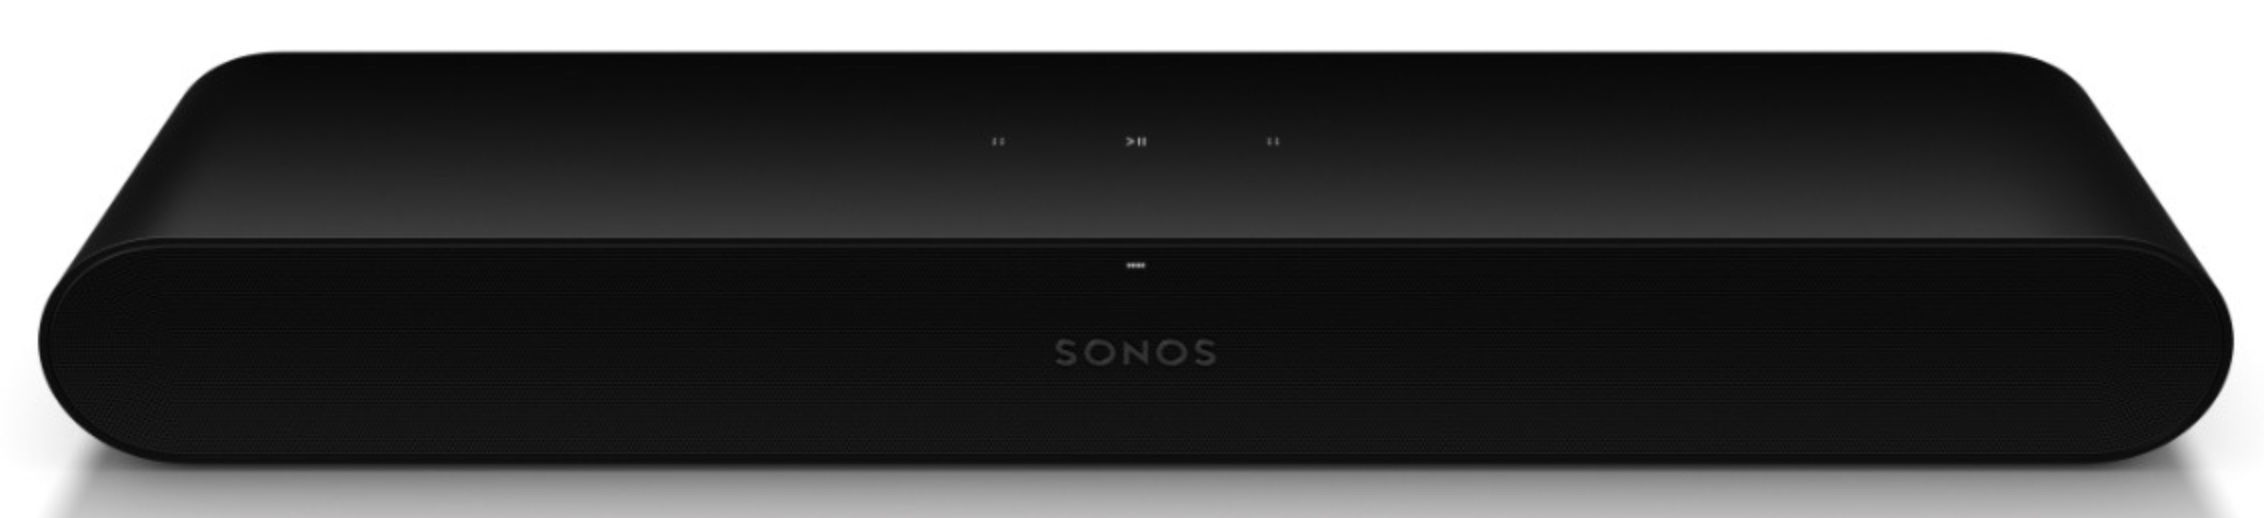 Sonos Ray   kompakte All in One Soundbar mit AirPlay für 204,99€ (statt 258€)